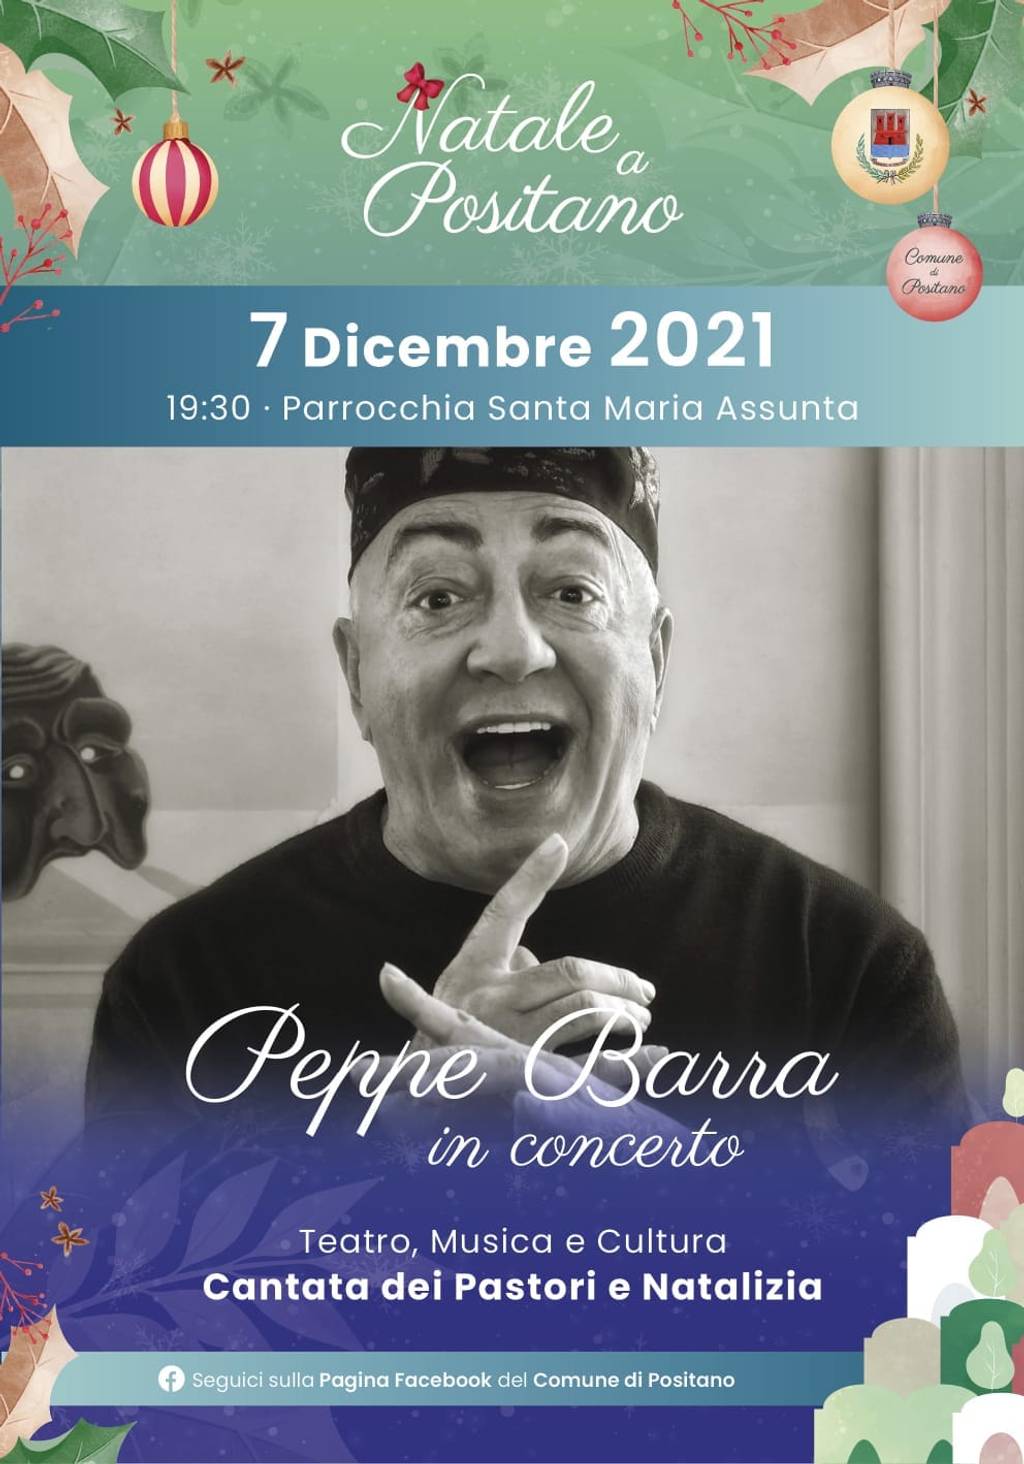 Peppe Barra in concert